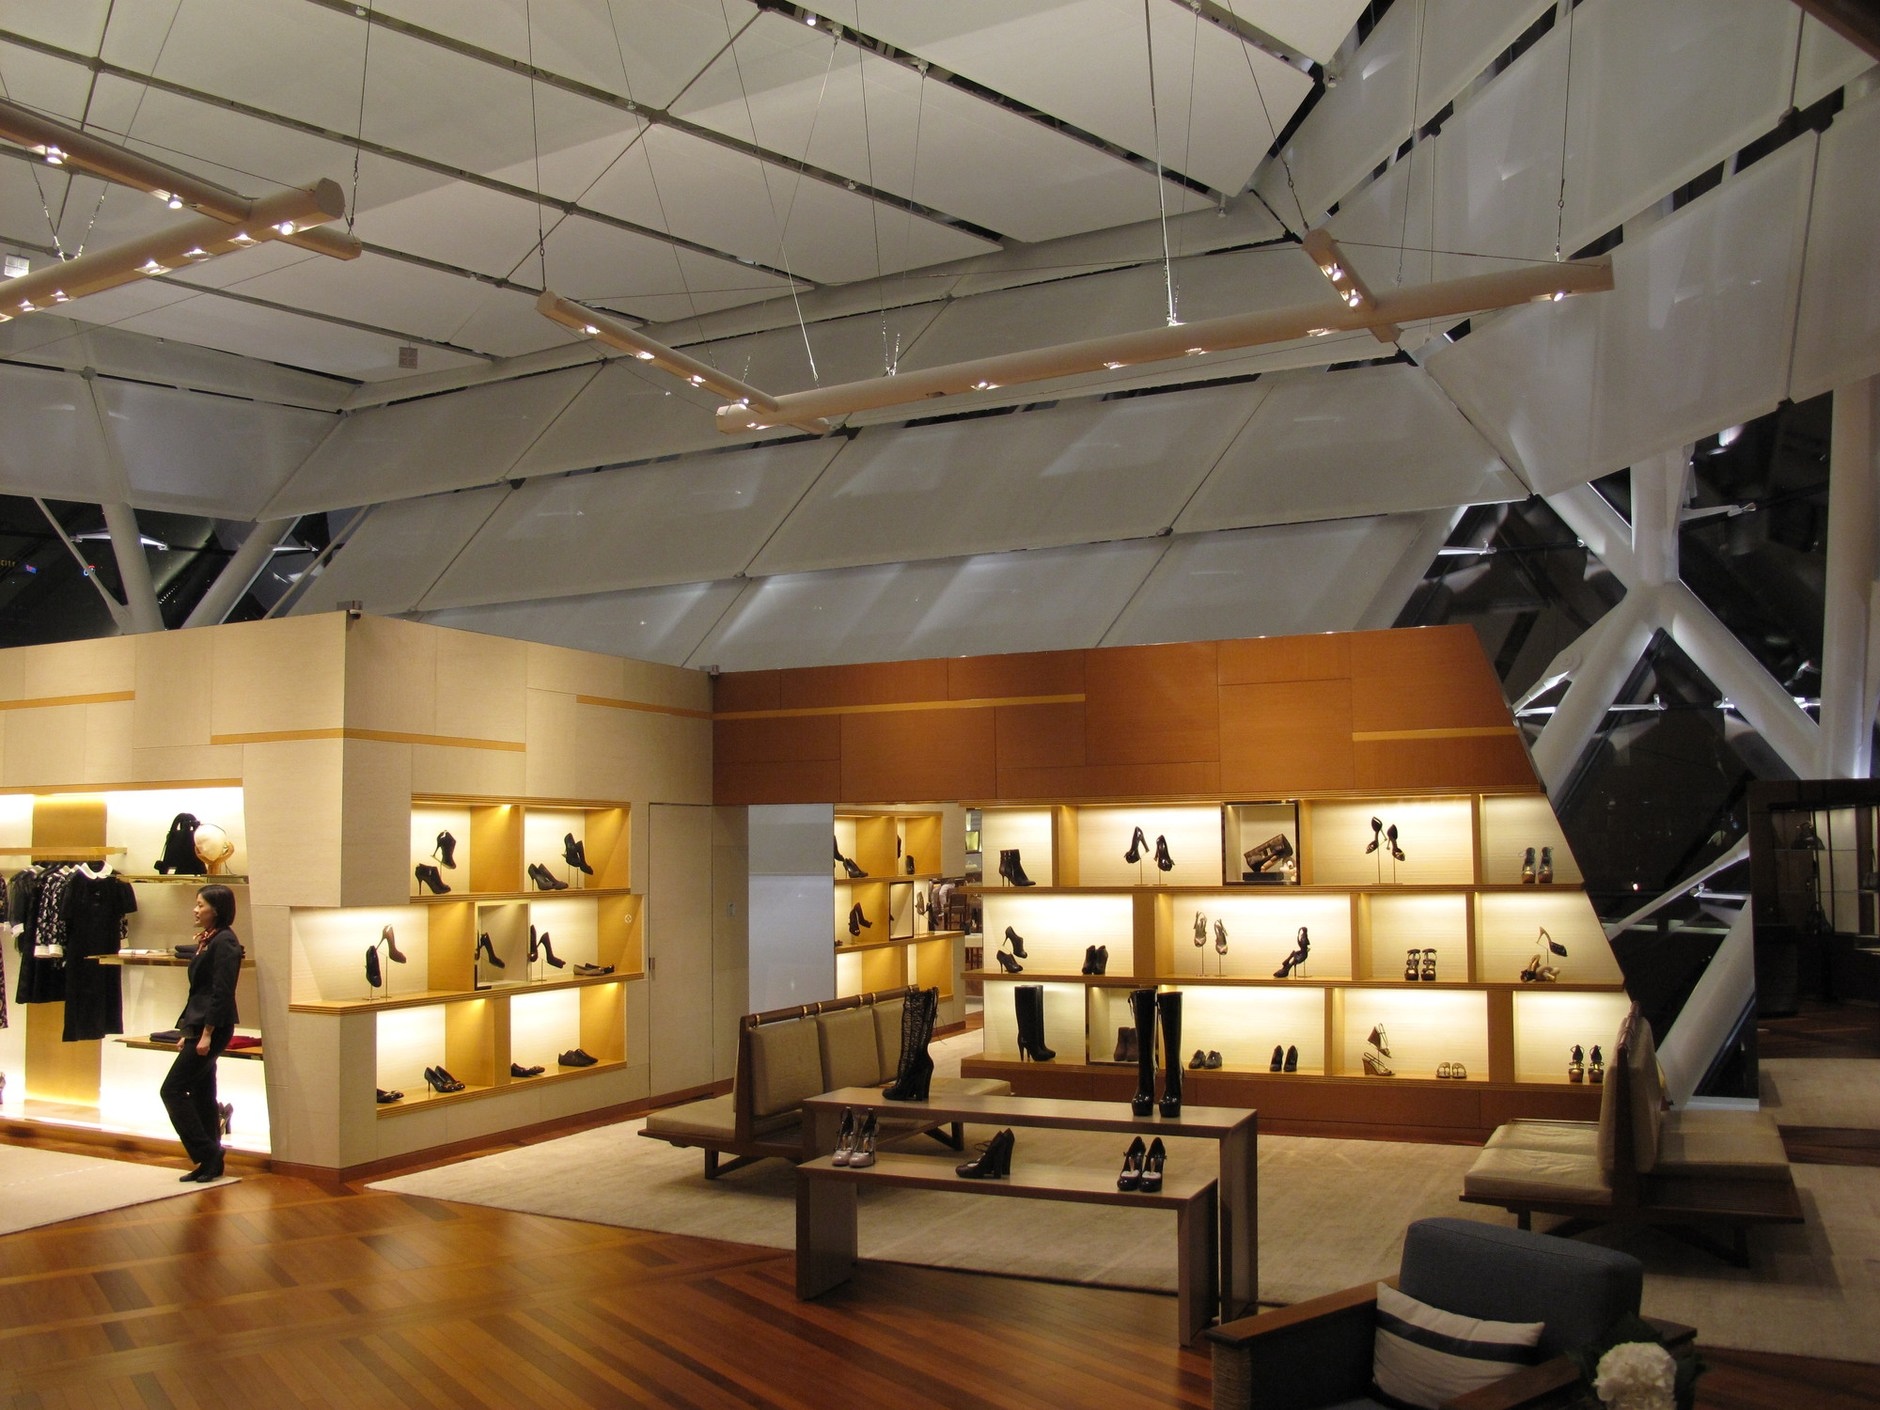 Projects: Louis Vuitton construction, Singapore